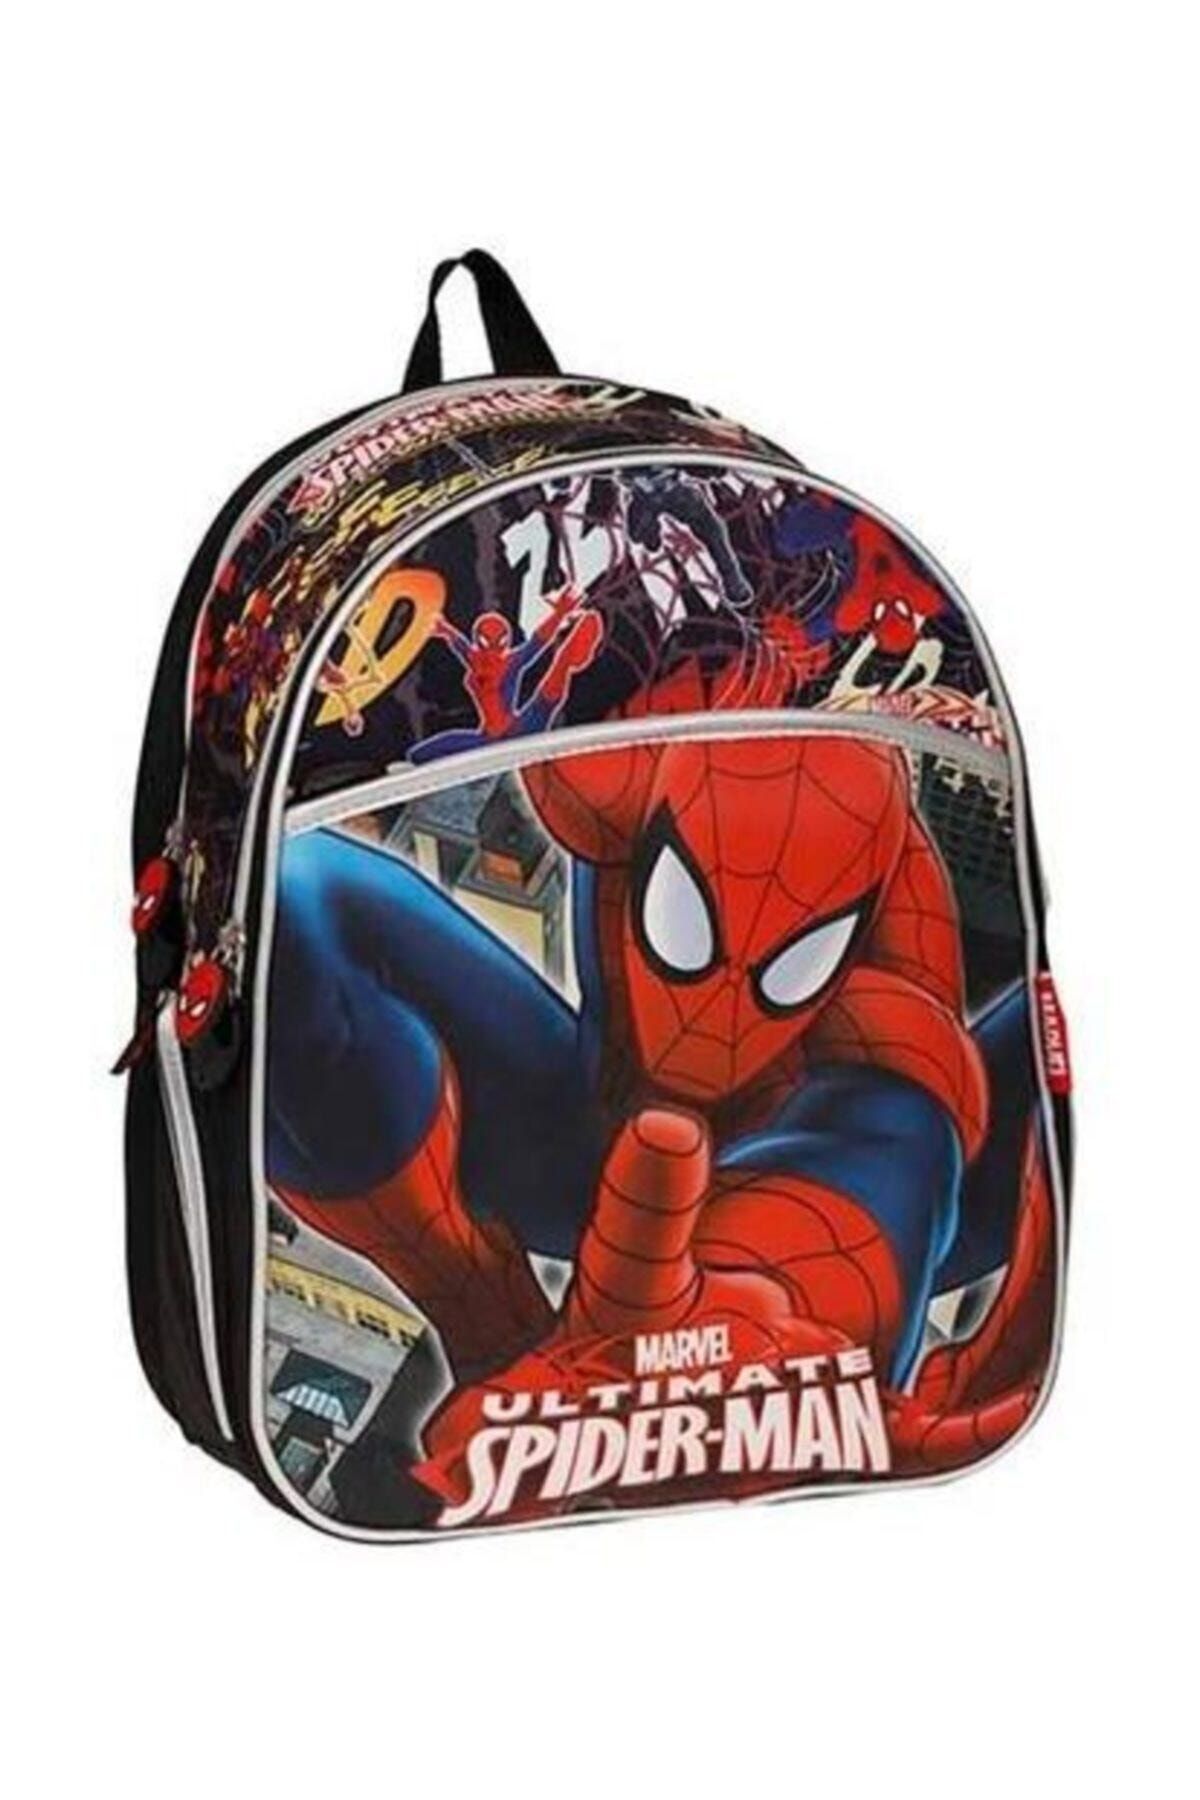 Hakan Çanta Spiderman  Okul Çantası